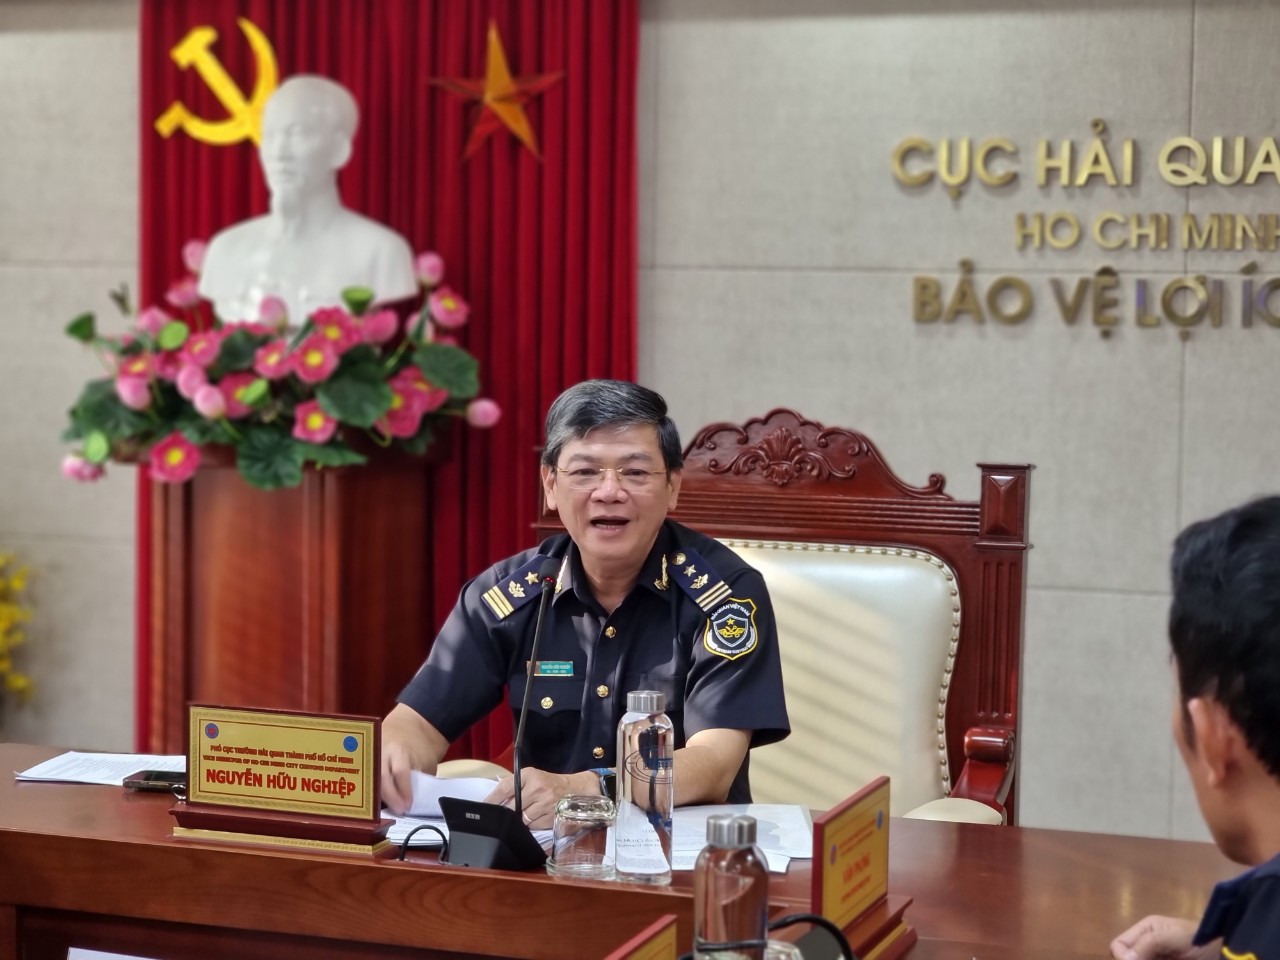 Ông Nguyễn Hữu Nghiệp - Phó Cục trưởng Hải quan TP. Hồ Chí Minh tại buổi họp báo. Ảnh: Kỳ Lân